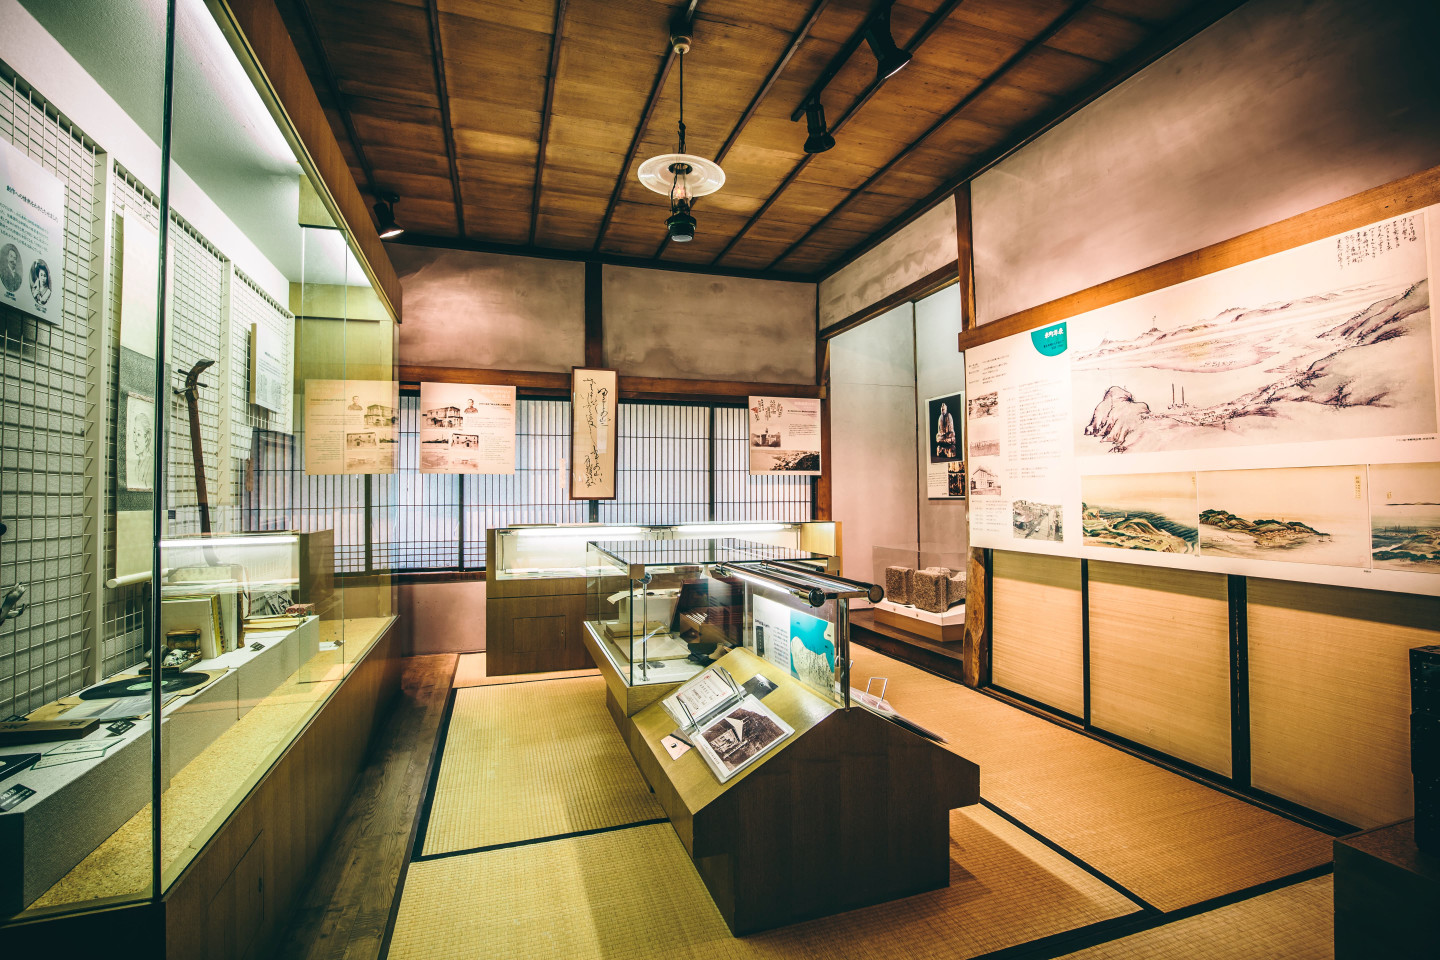 2. Visit the old merchant house museum “Yonemachi Furusatokan”